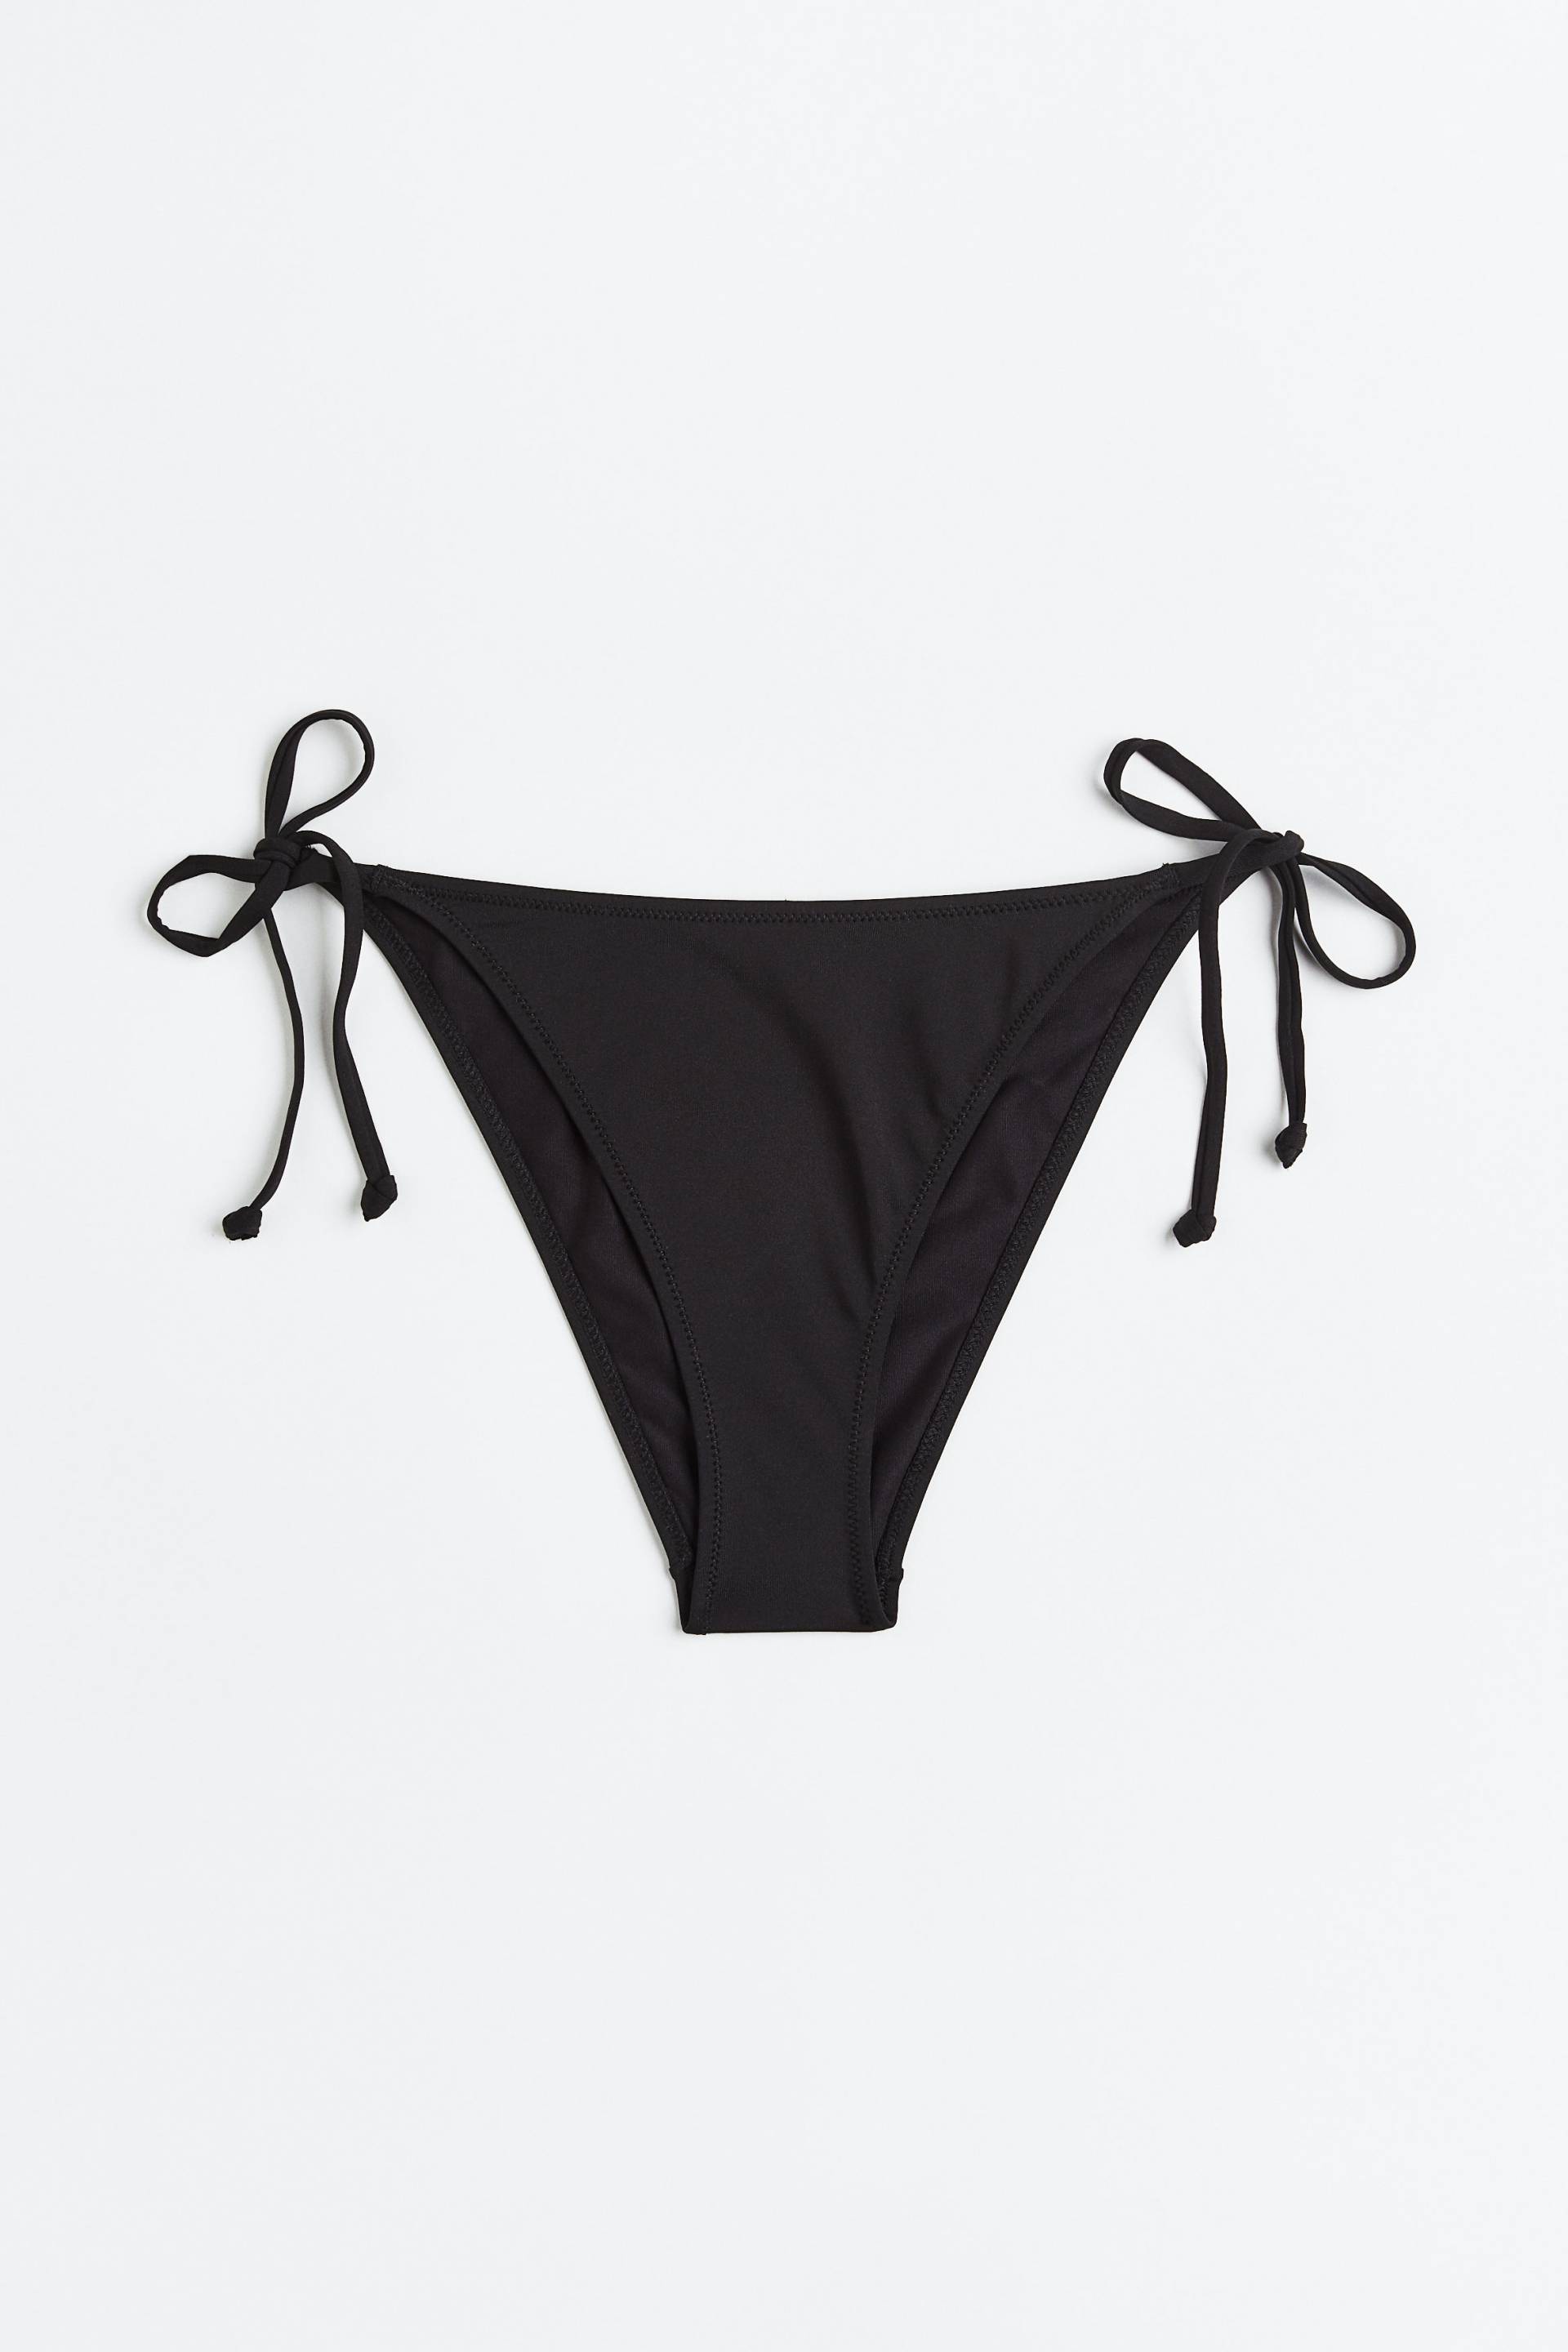 H&M Tie-Tanga Bikinihose Schwarz, Bikini-Unterteil in Größe 48. Farbe: Black von H&M